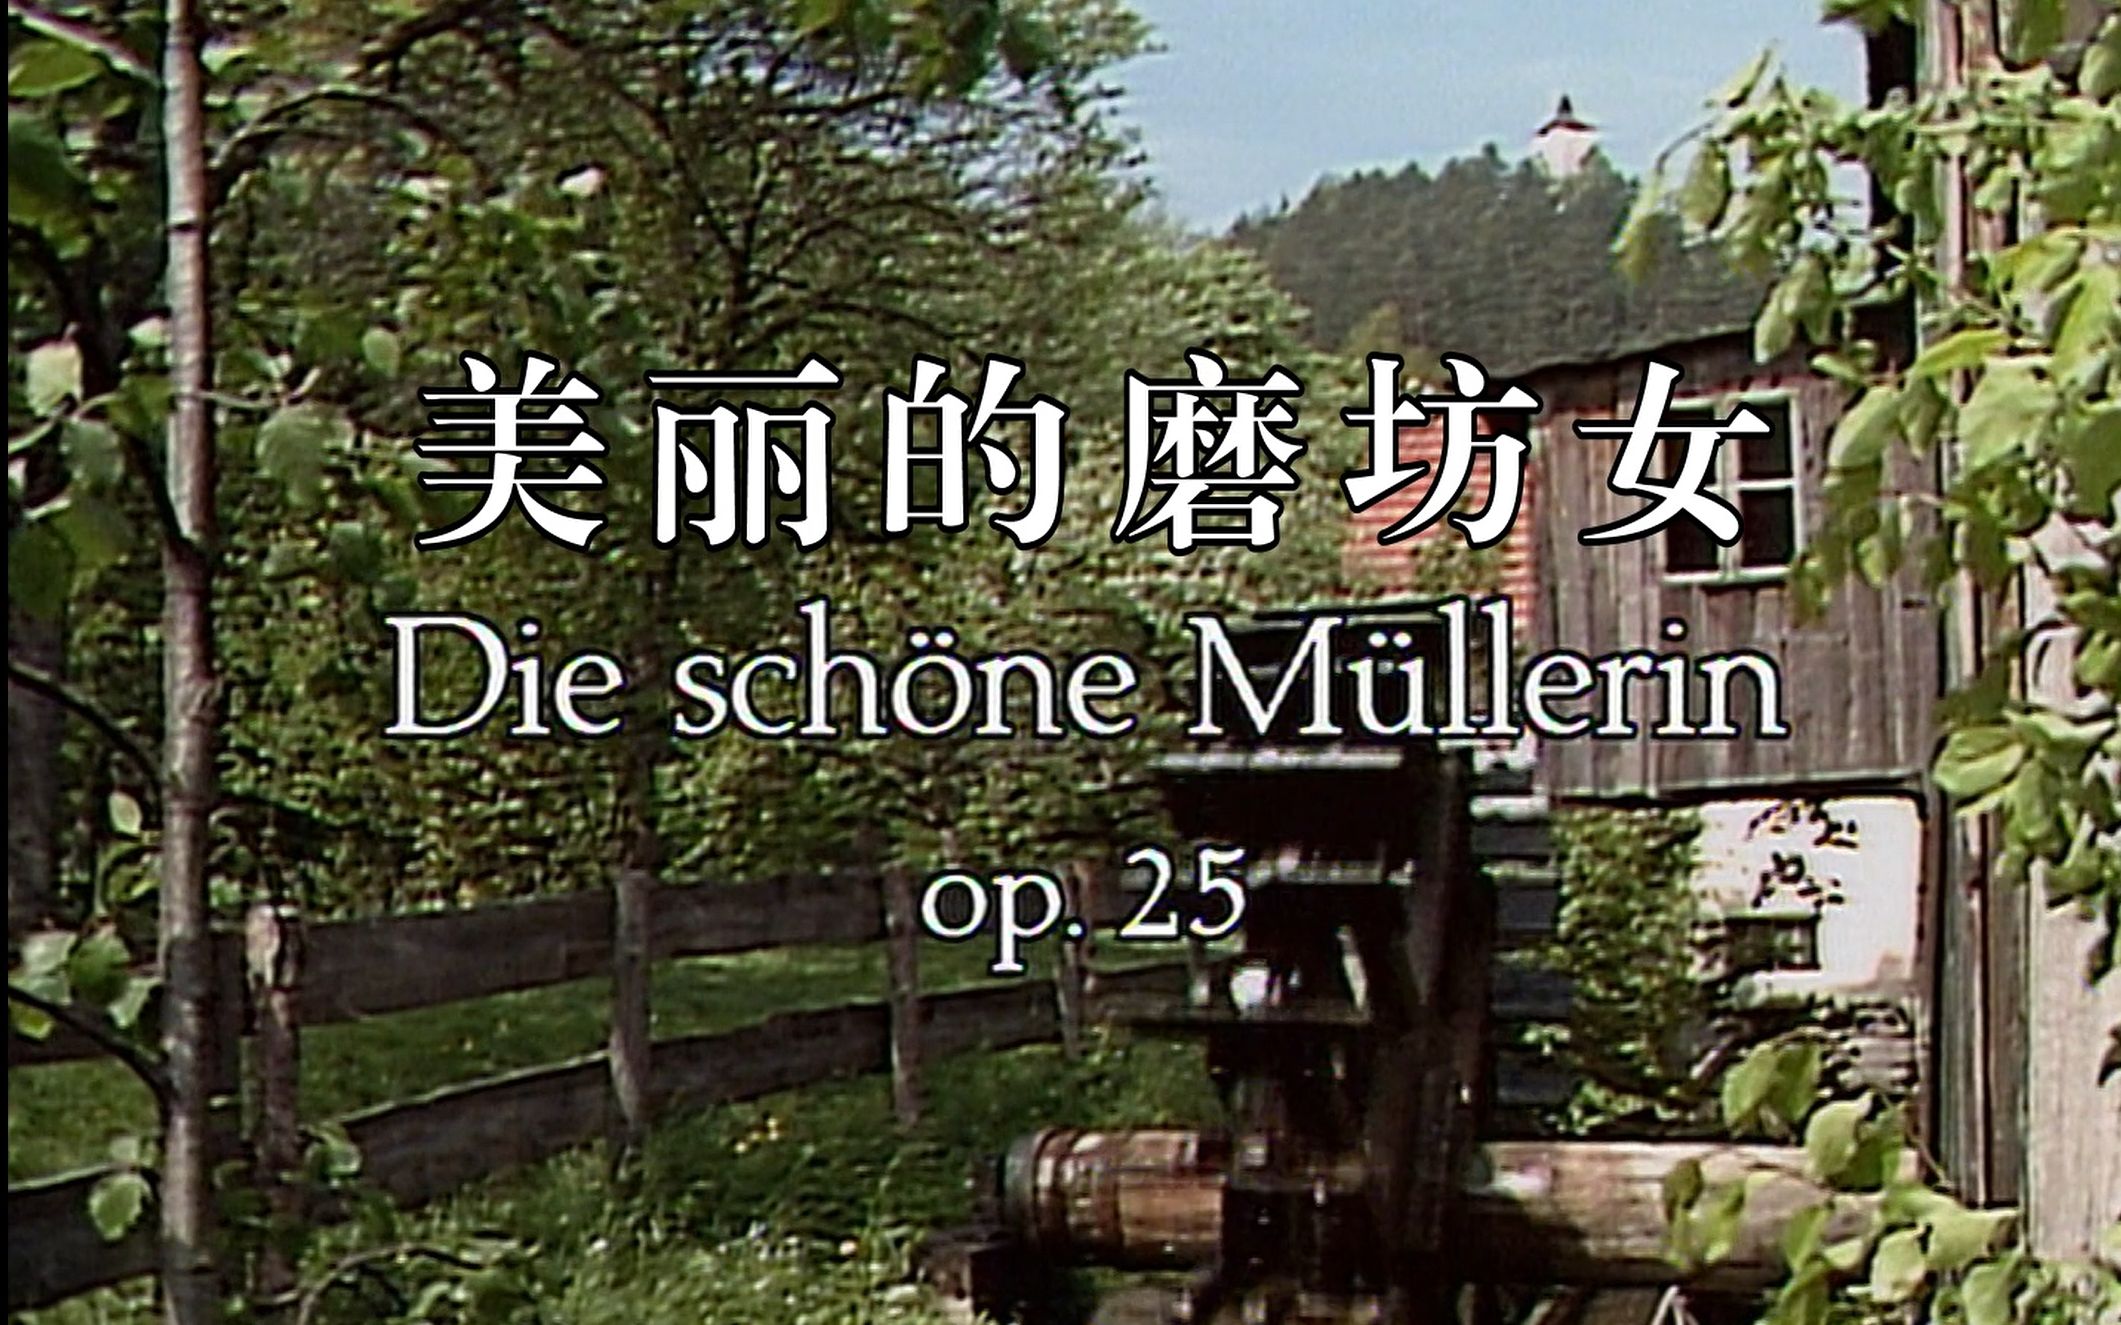 舒伯特声乐套曲《美丽的磨坊女》schubert: die schöne müllerin 